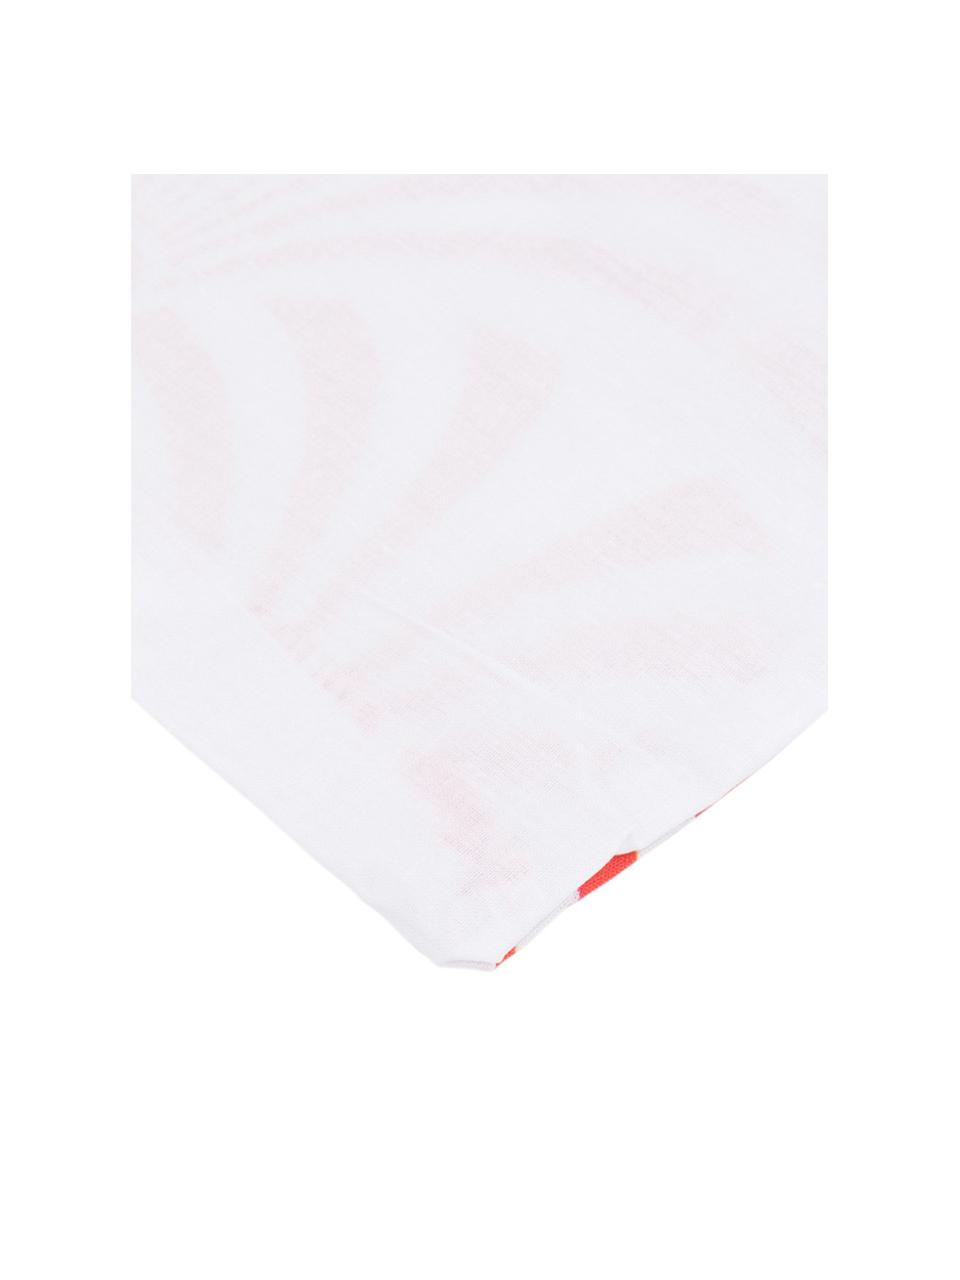 Parure copripiumino in cotone Crone, Cotone, Fronte: rosso salmone, bianco Retro: bianco, 200 x 200 cm